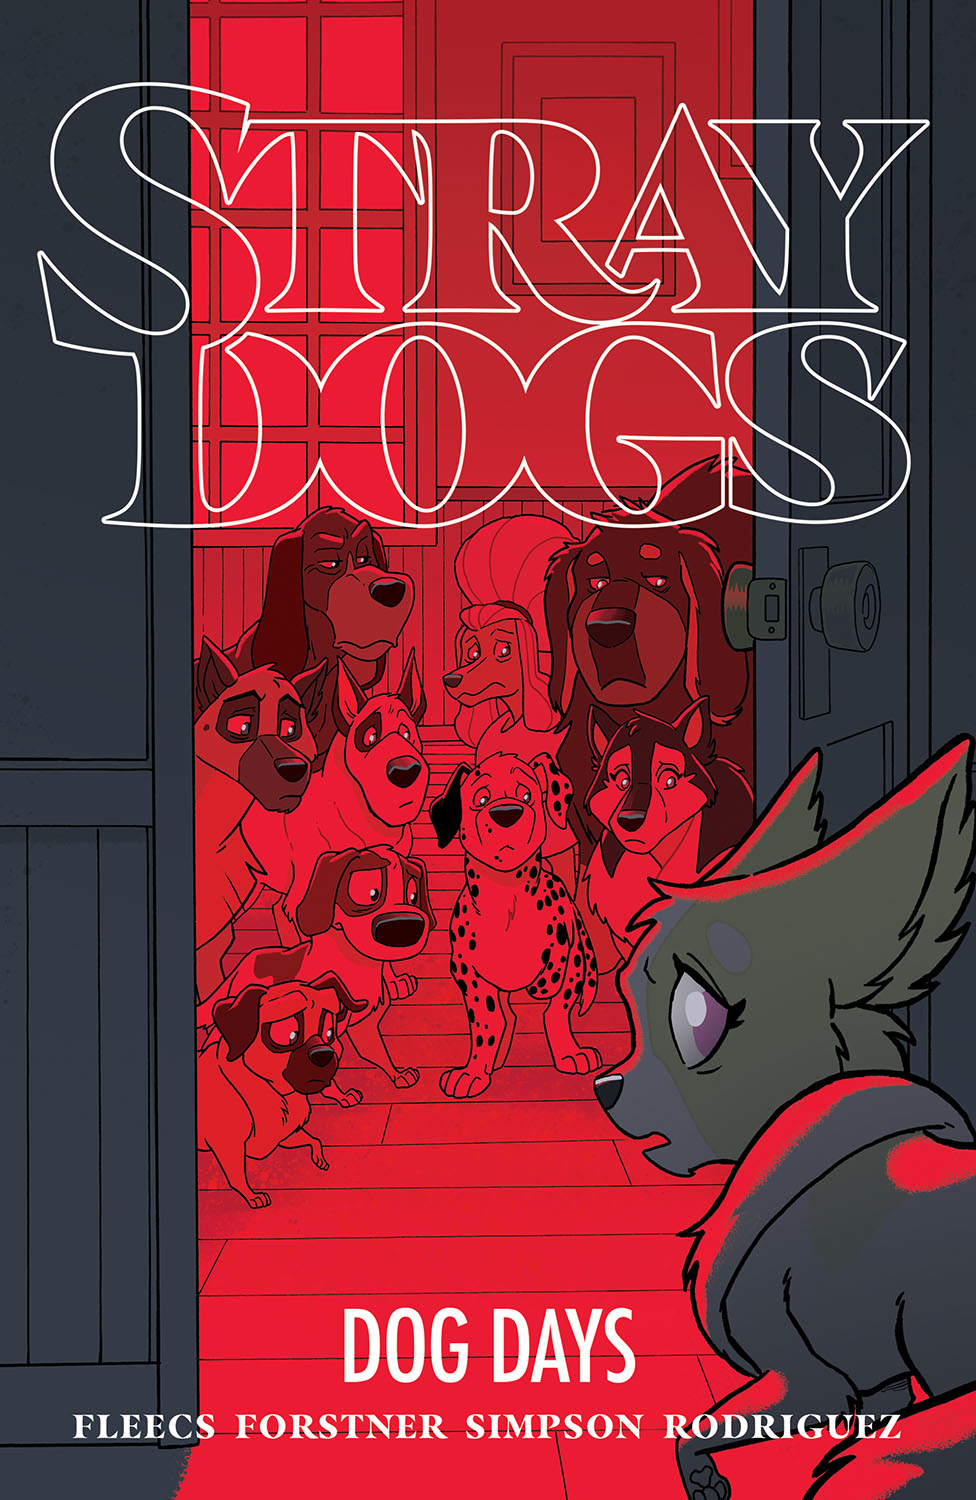 Stray Dogs Graphic Novel Volume 2 Dog Days